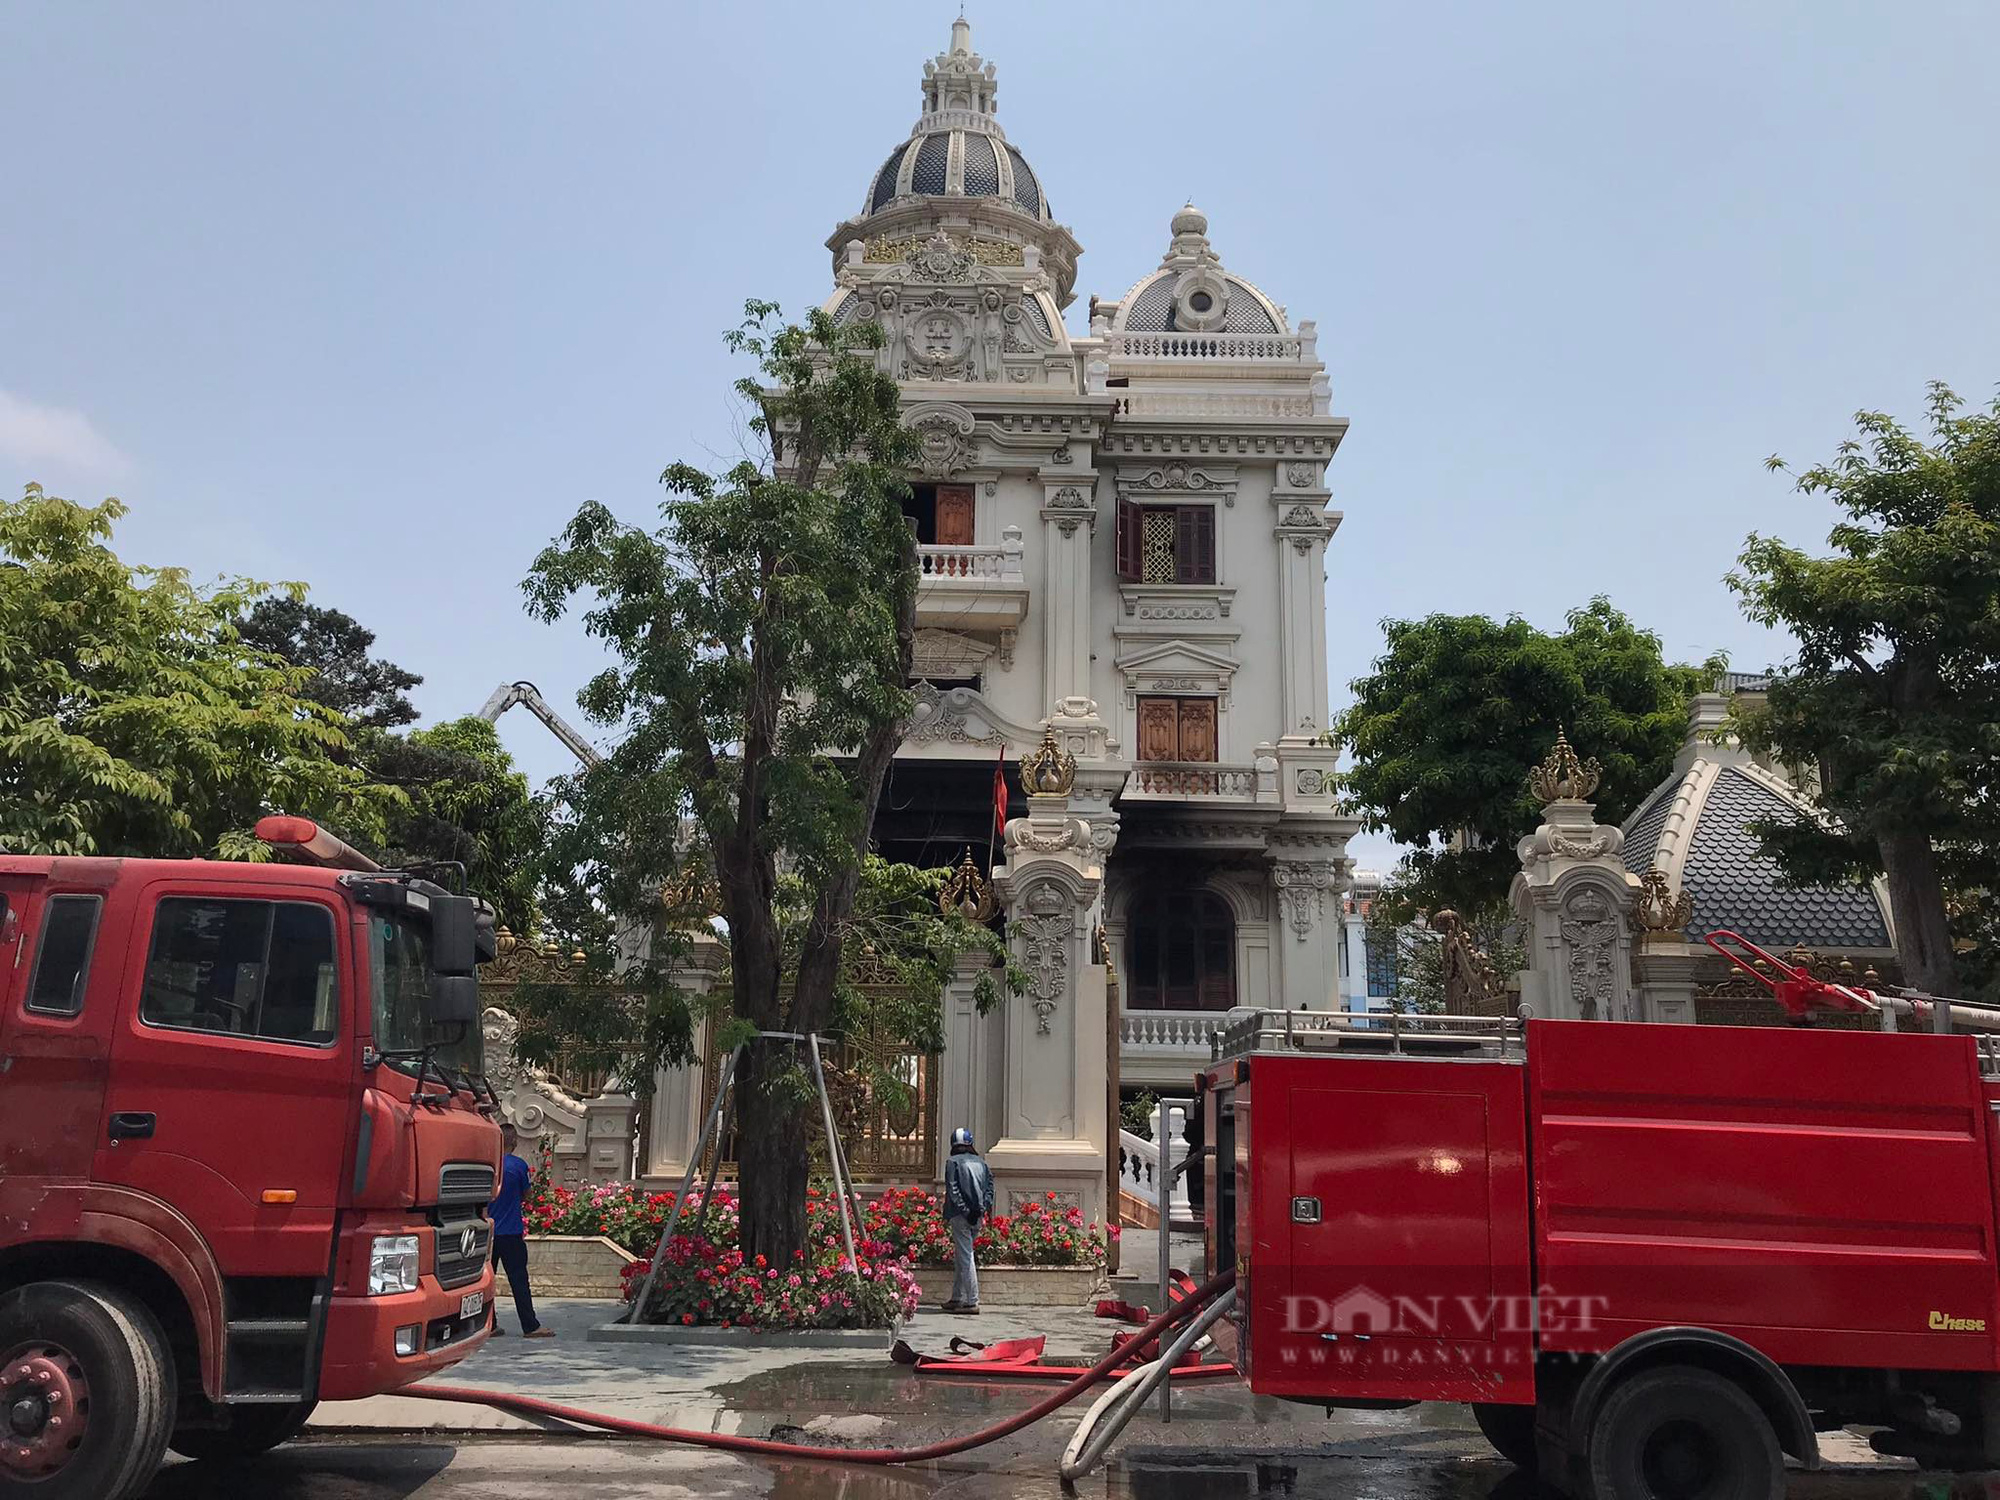 Cập nhật: Cận cảnh căn biệt thự trăm tỷ ở Quảng Ninh bốc cháy - Ảnh 3.